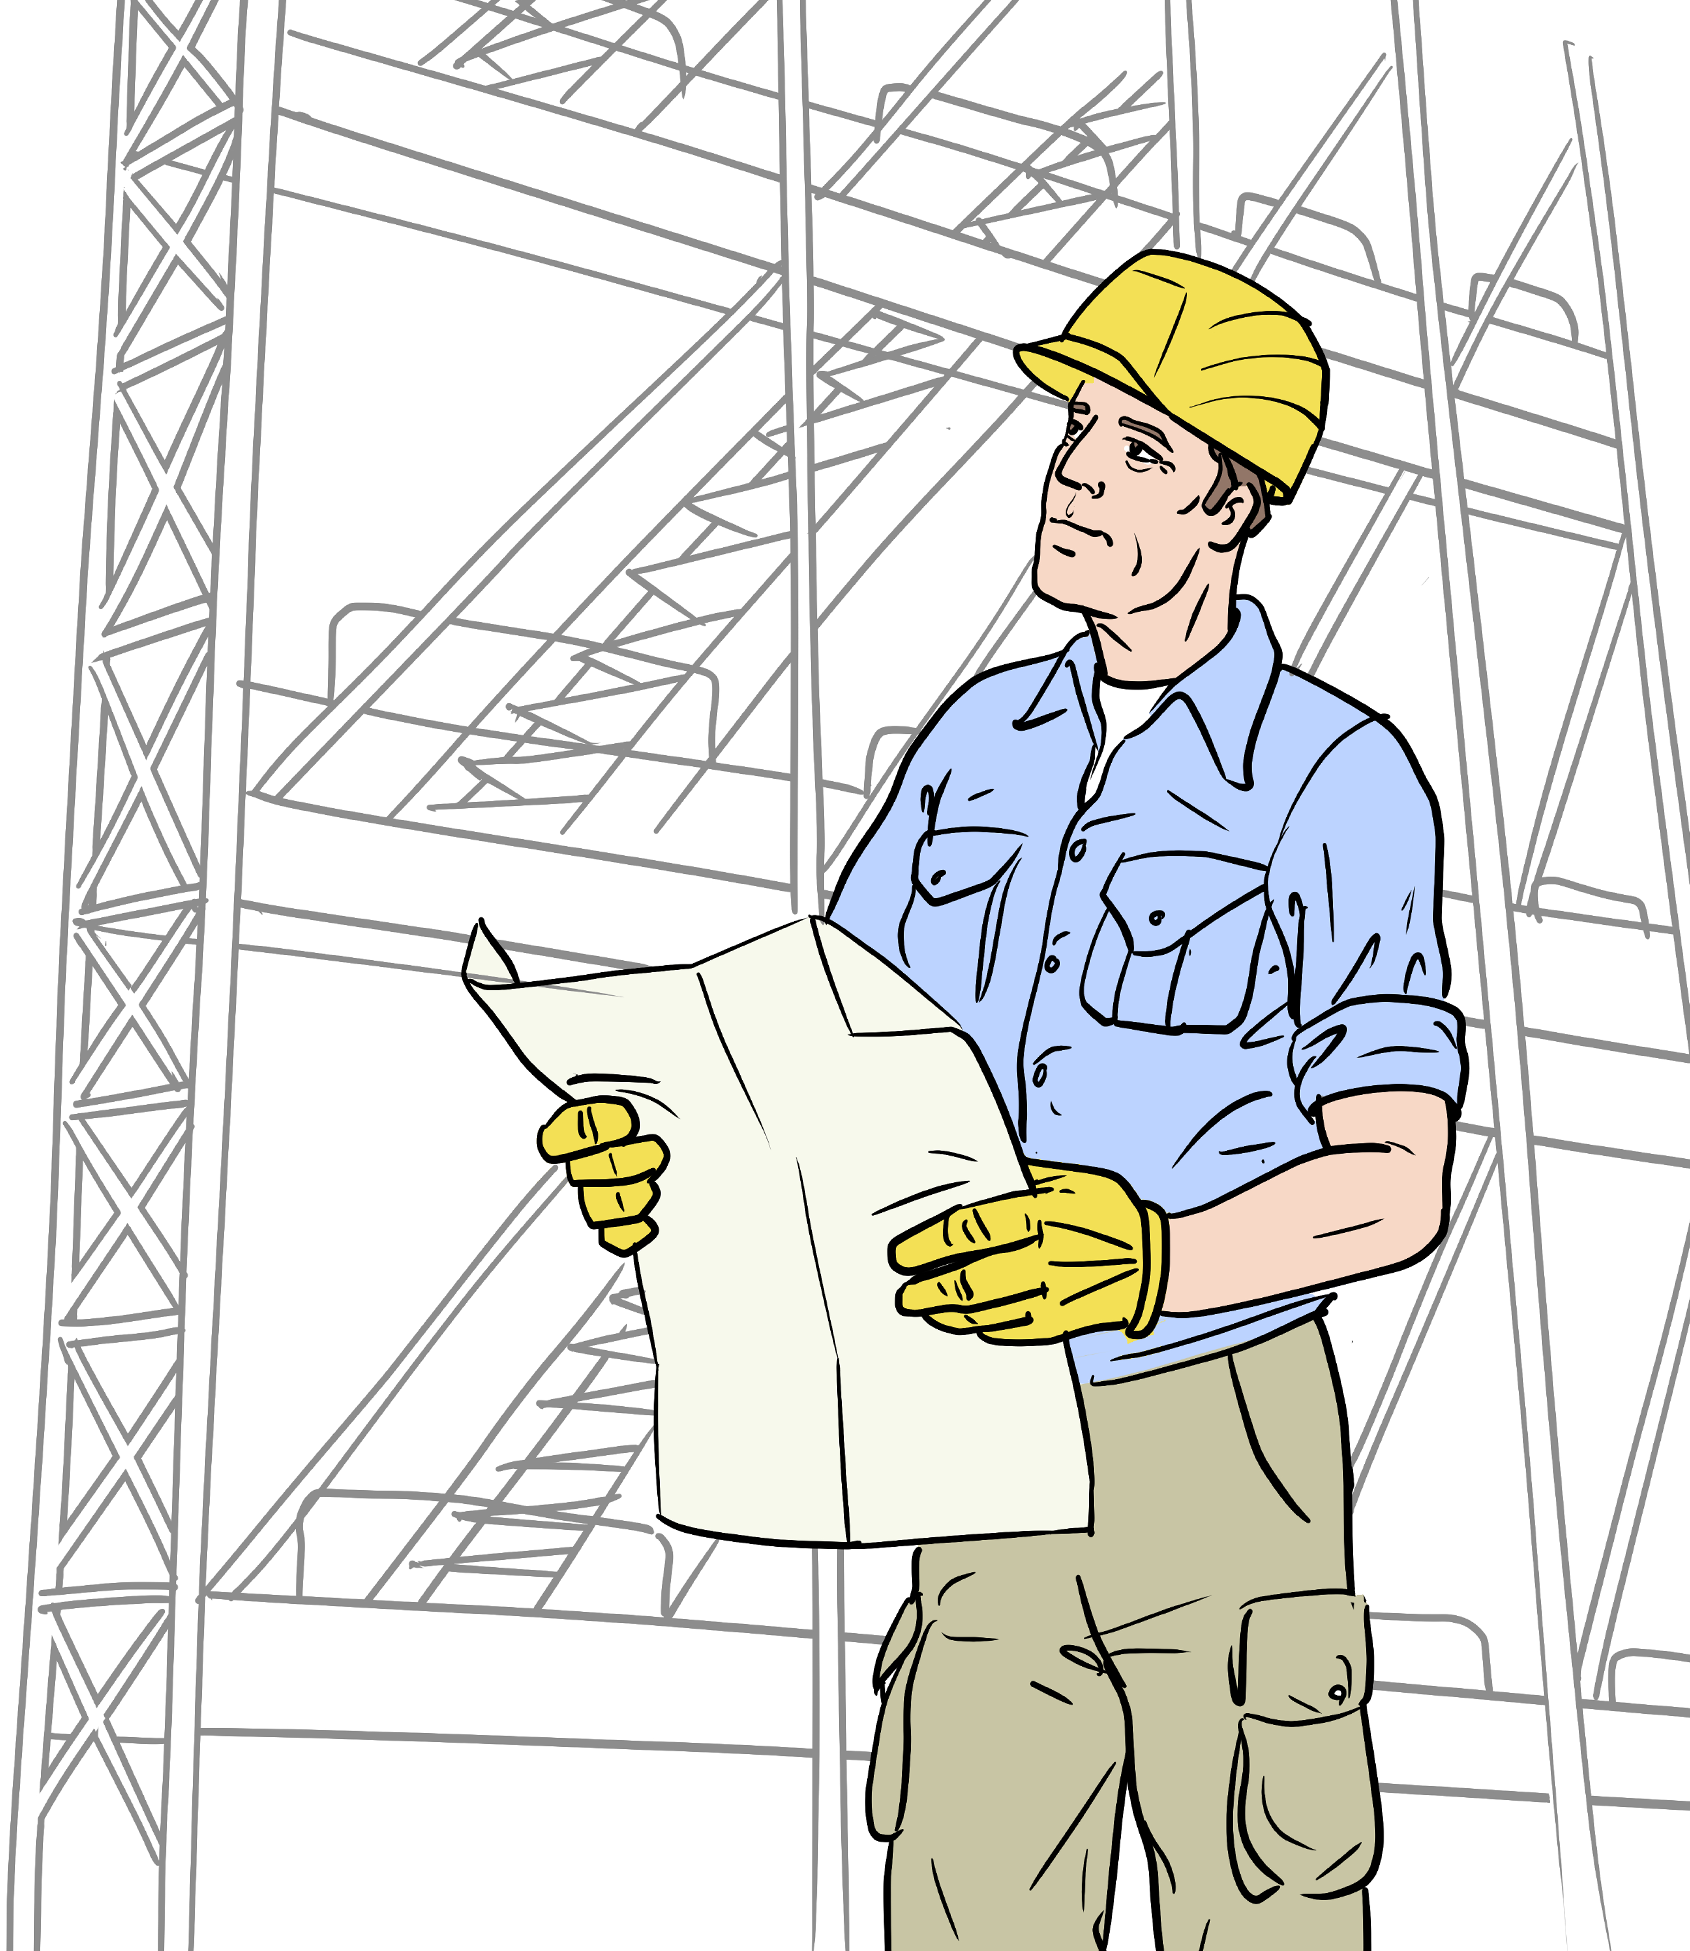 Illustration „Der Handwerkende“:  Ein Mann in Arbeitskleidung hält mit beiden Händen einen Plan vor sich. Er trägt gelbe Arbeitshandschuhe und einen gelben Schutzhelm. Im Hintergrund sieht man ein Baugerüst. Er blickt schräg nach oben.